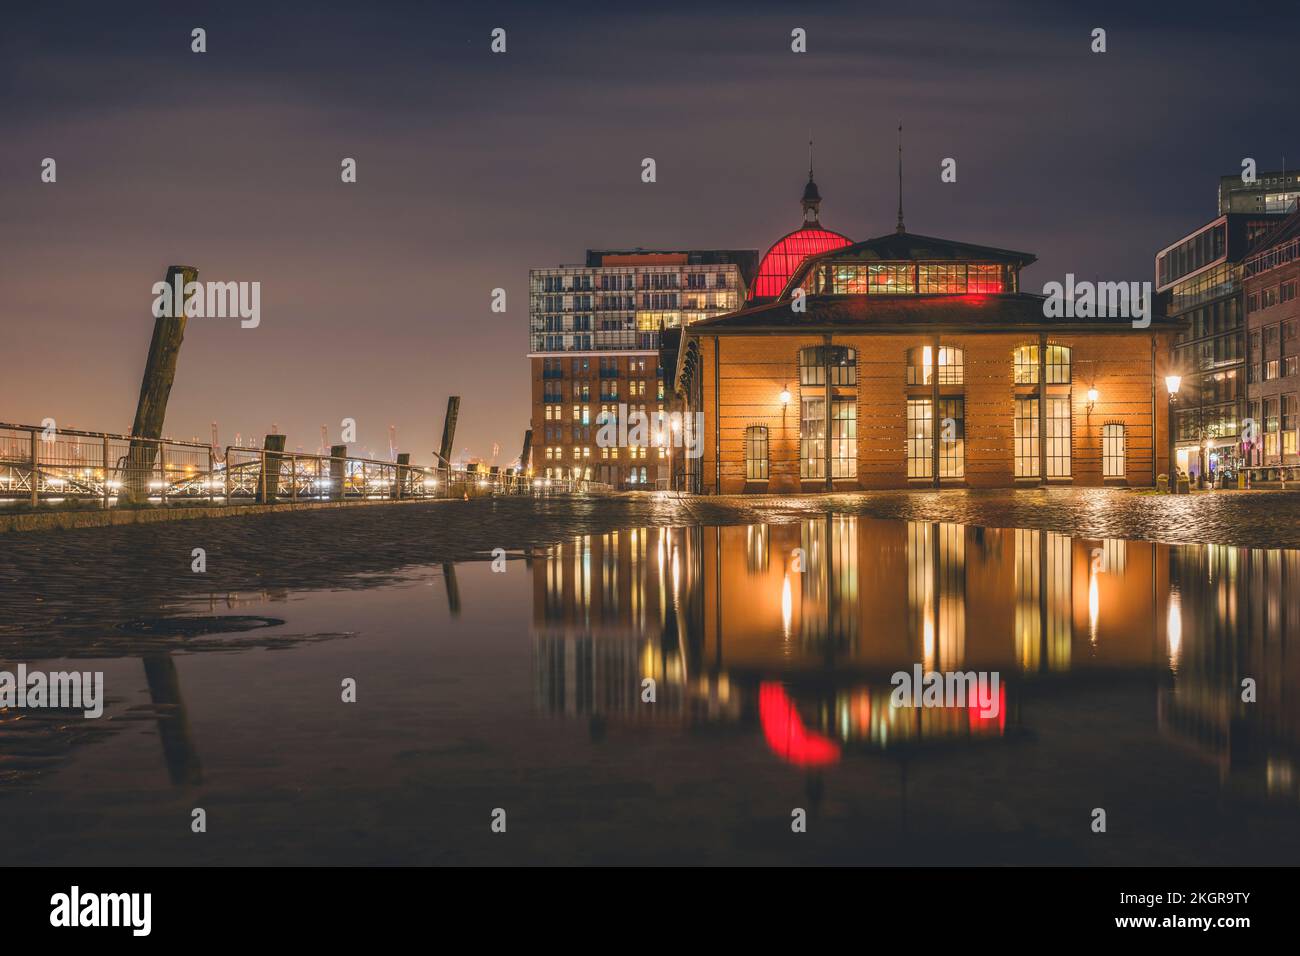 Deutschland, Hamburg, historische Fischauktionshalle bei Nacht Stockfoto